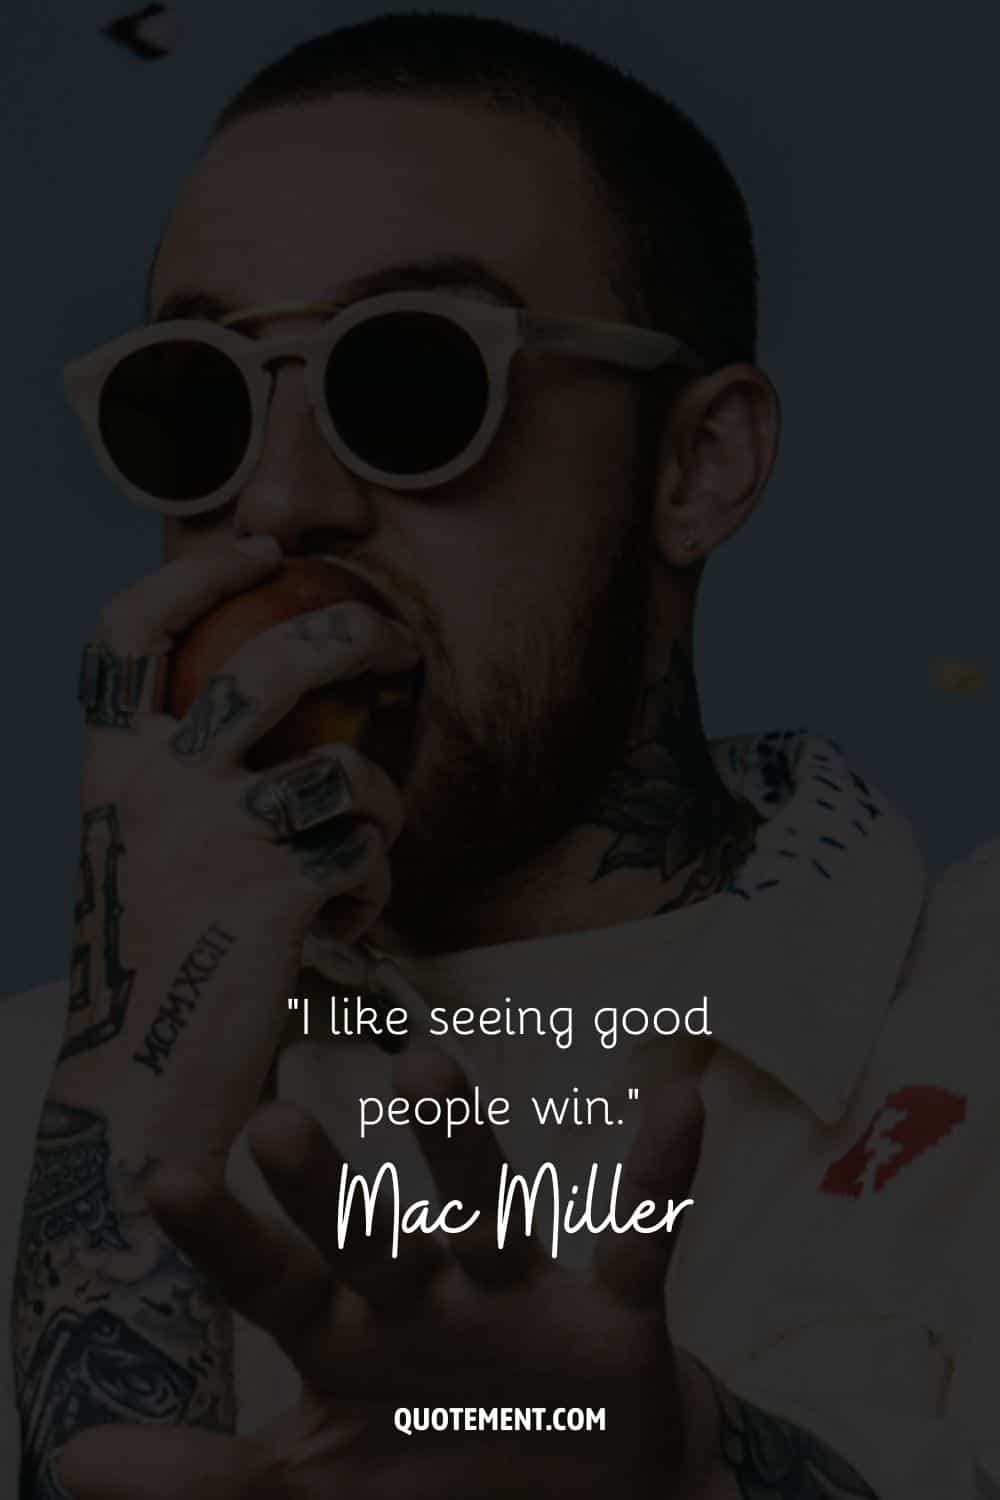 "Me gusta ver ganar a la gente buena". - Mac Miller